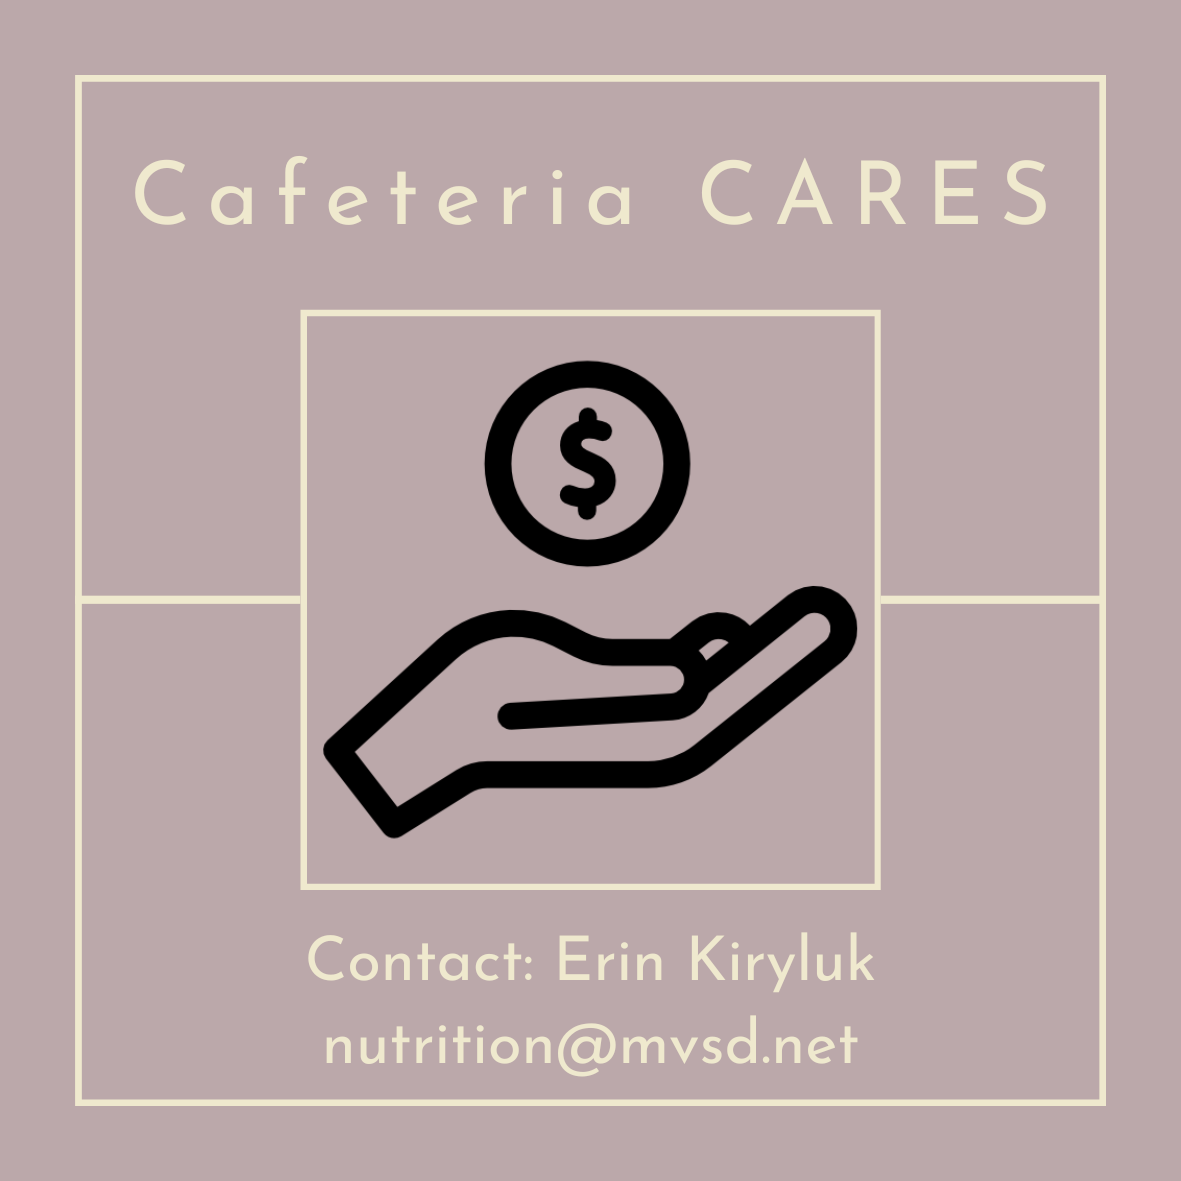  Cafeteria Cares